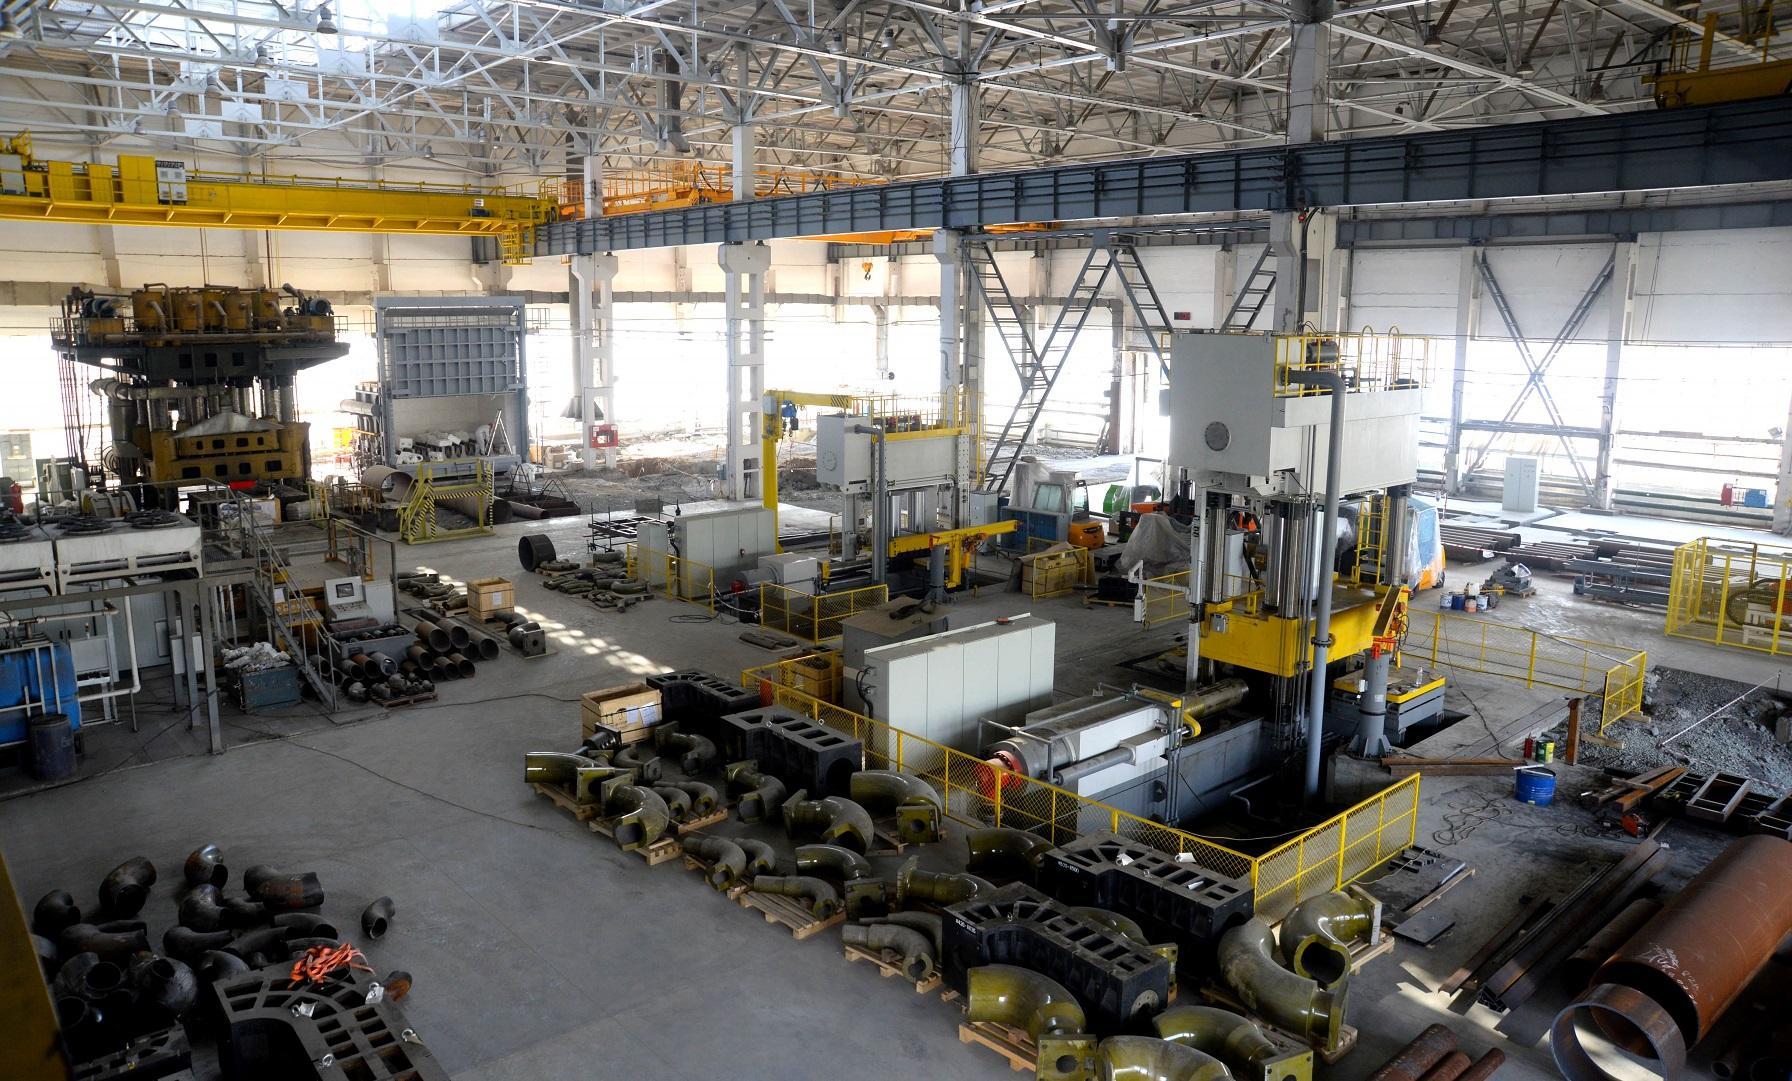 ОМК инвестирует 3 млрд рублей в техническое перевооружение своего завода в Челябинске для выхода на новые рынки